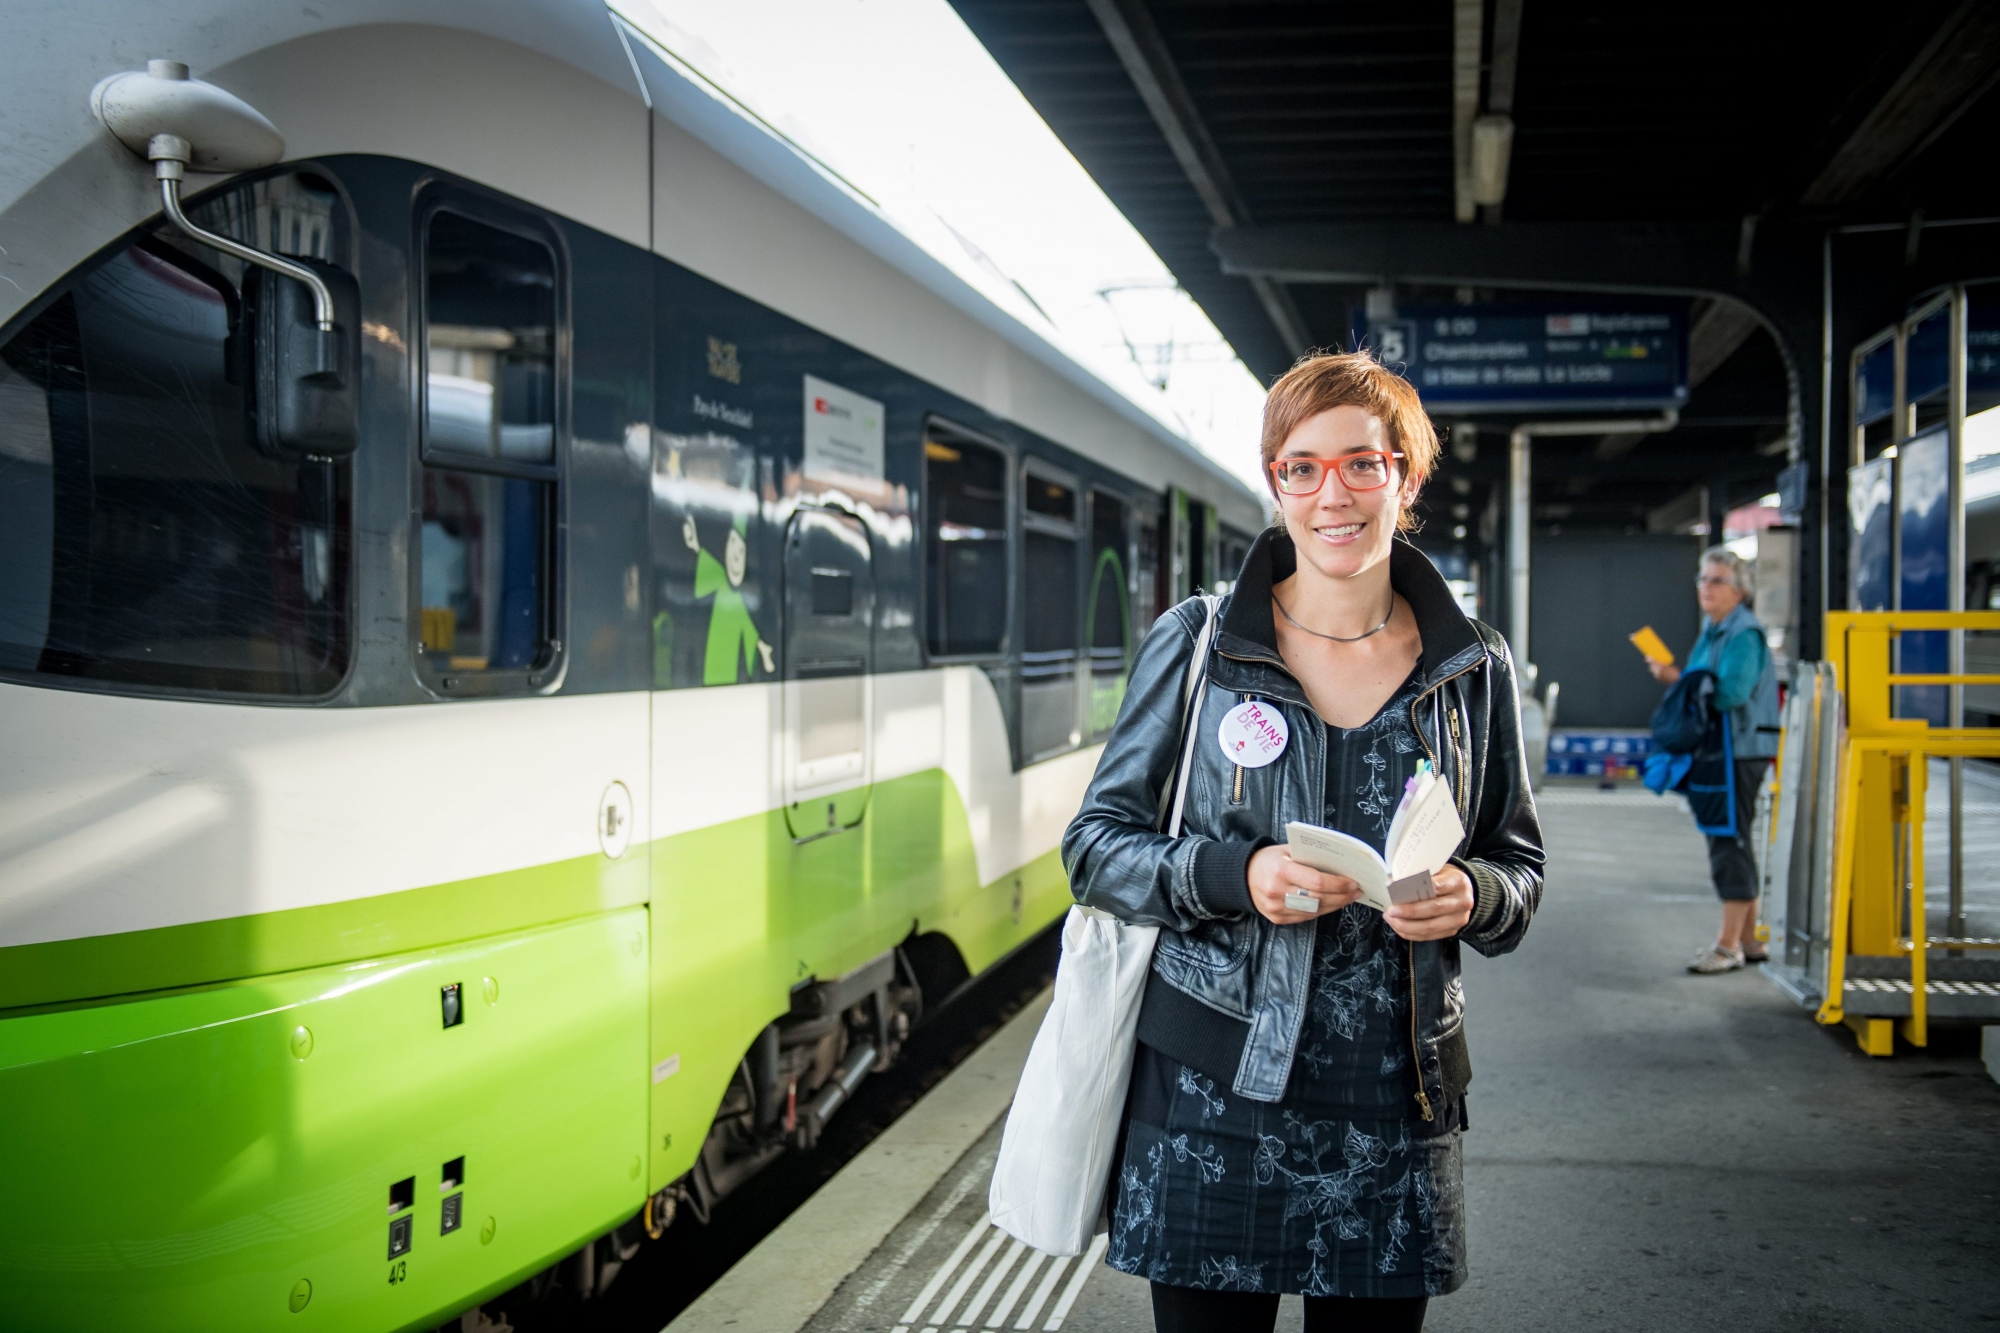 Portrait d'Odile Cornuz dans le cadre de "Trains de vie"

Neuchatel, le 30 septembre 2017
Photo : Lucas Vuitel